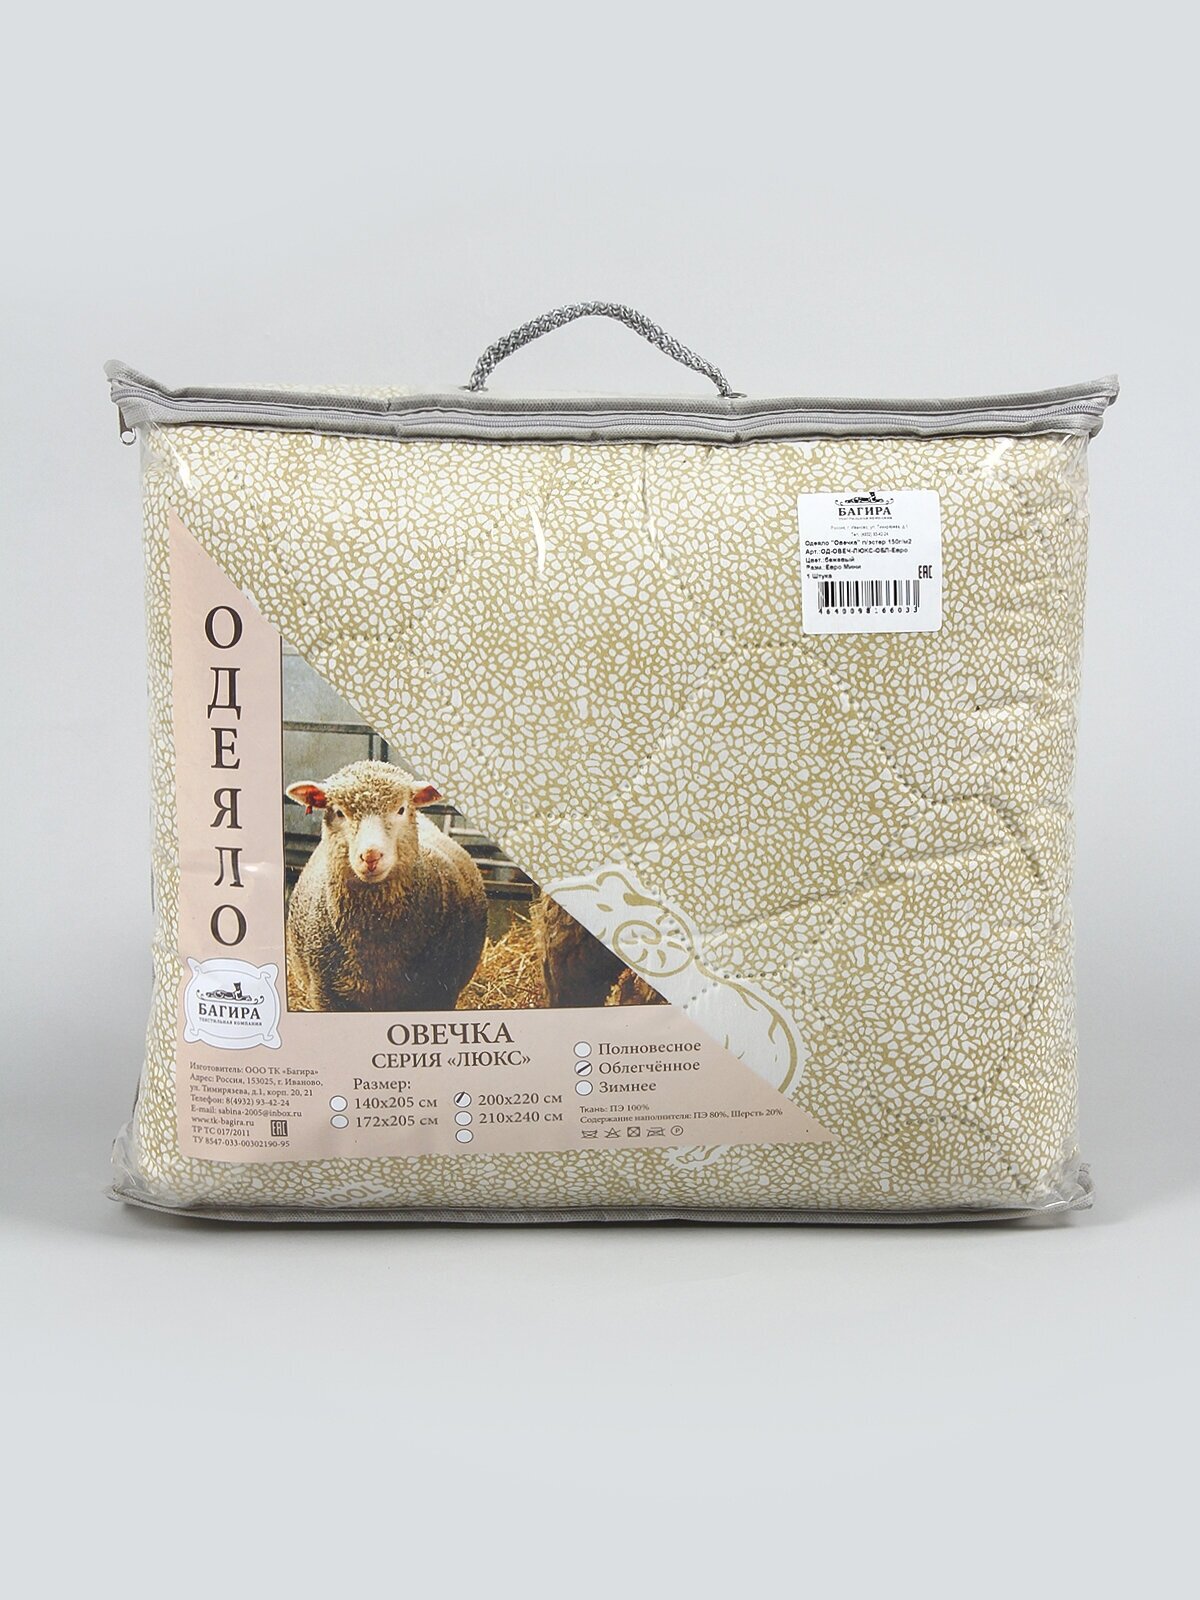 Одеяло "Овечья шерсть" облегченное, Евро размер, в полиэстере, плотность 150 г/м2 - фотография № 10